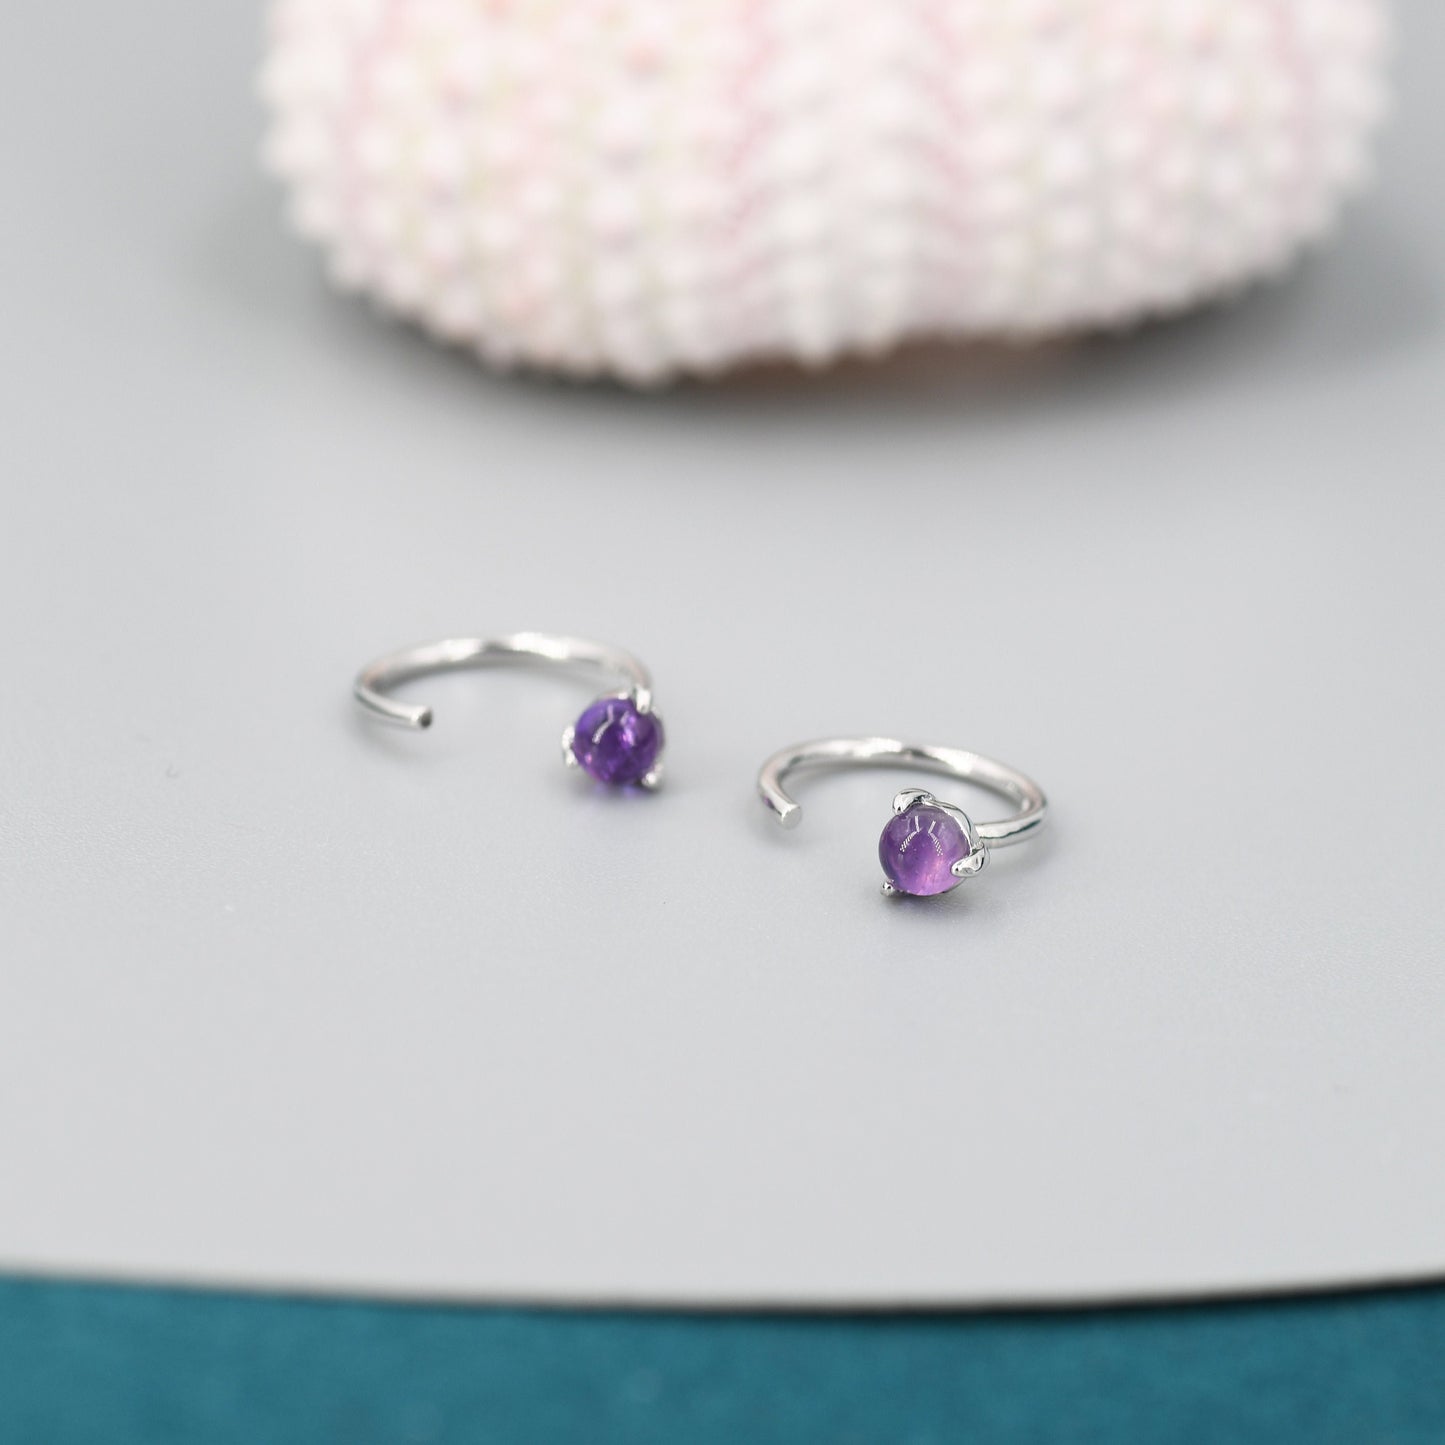 Genuine Amethyst Huggie Hoop Earrings in Sterling Silver, 3mm Natural Purple Amethyst Open Hoops, Pull Through Threaders, C Shape Half Hoops